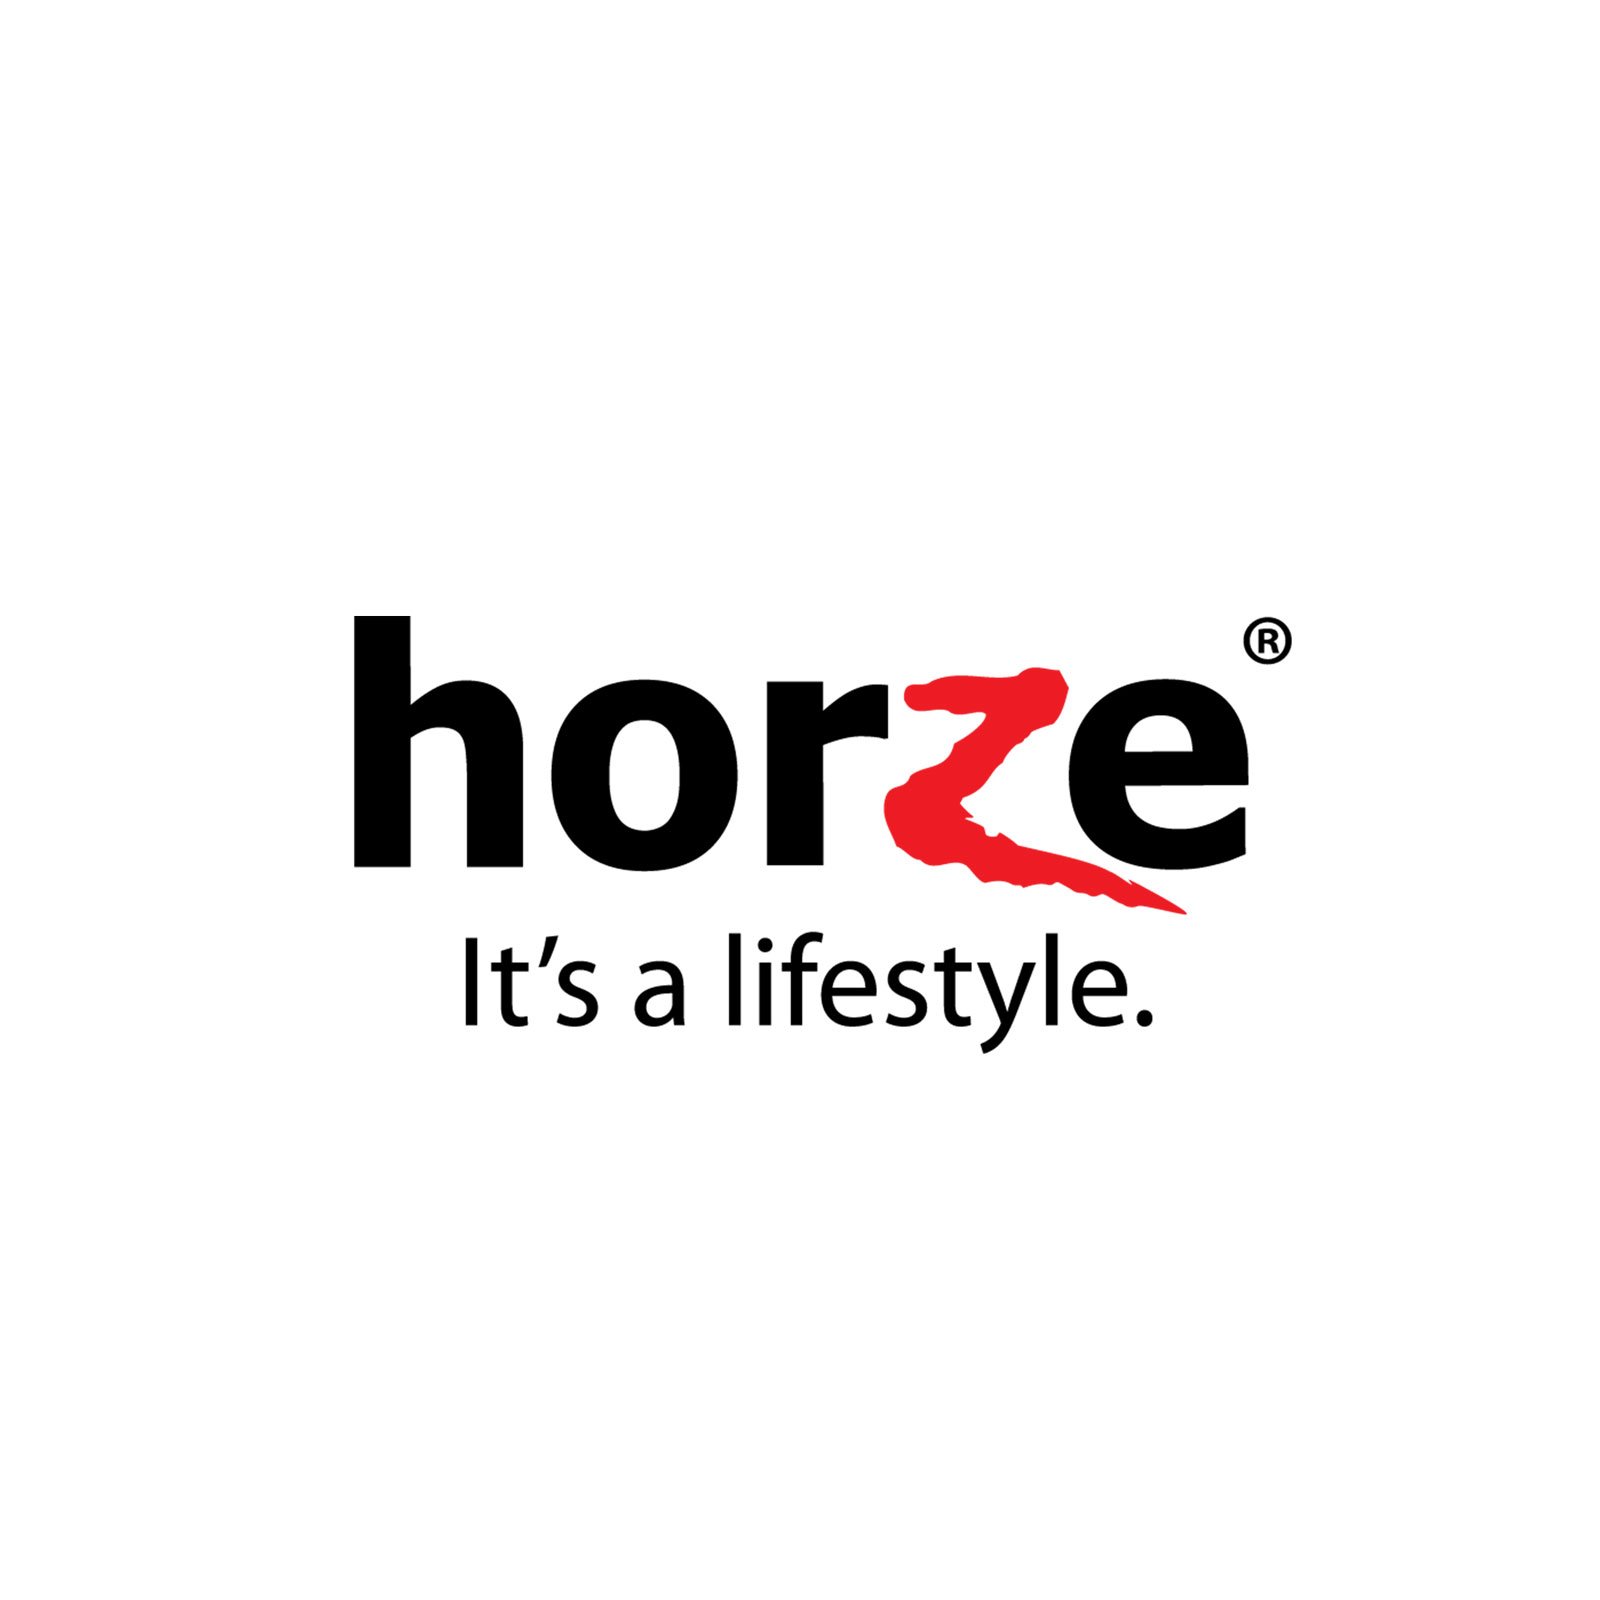 Horze.nl reviews, beoordelingen en ervaringen